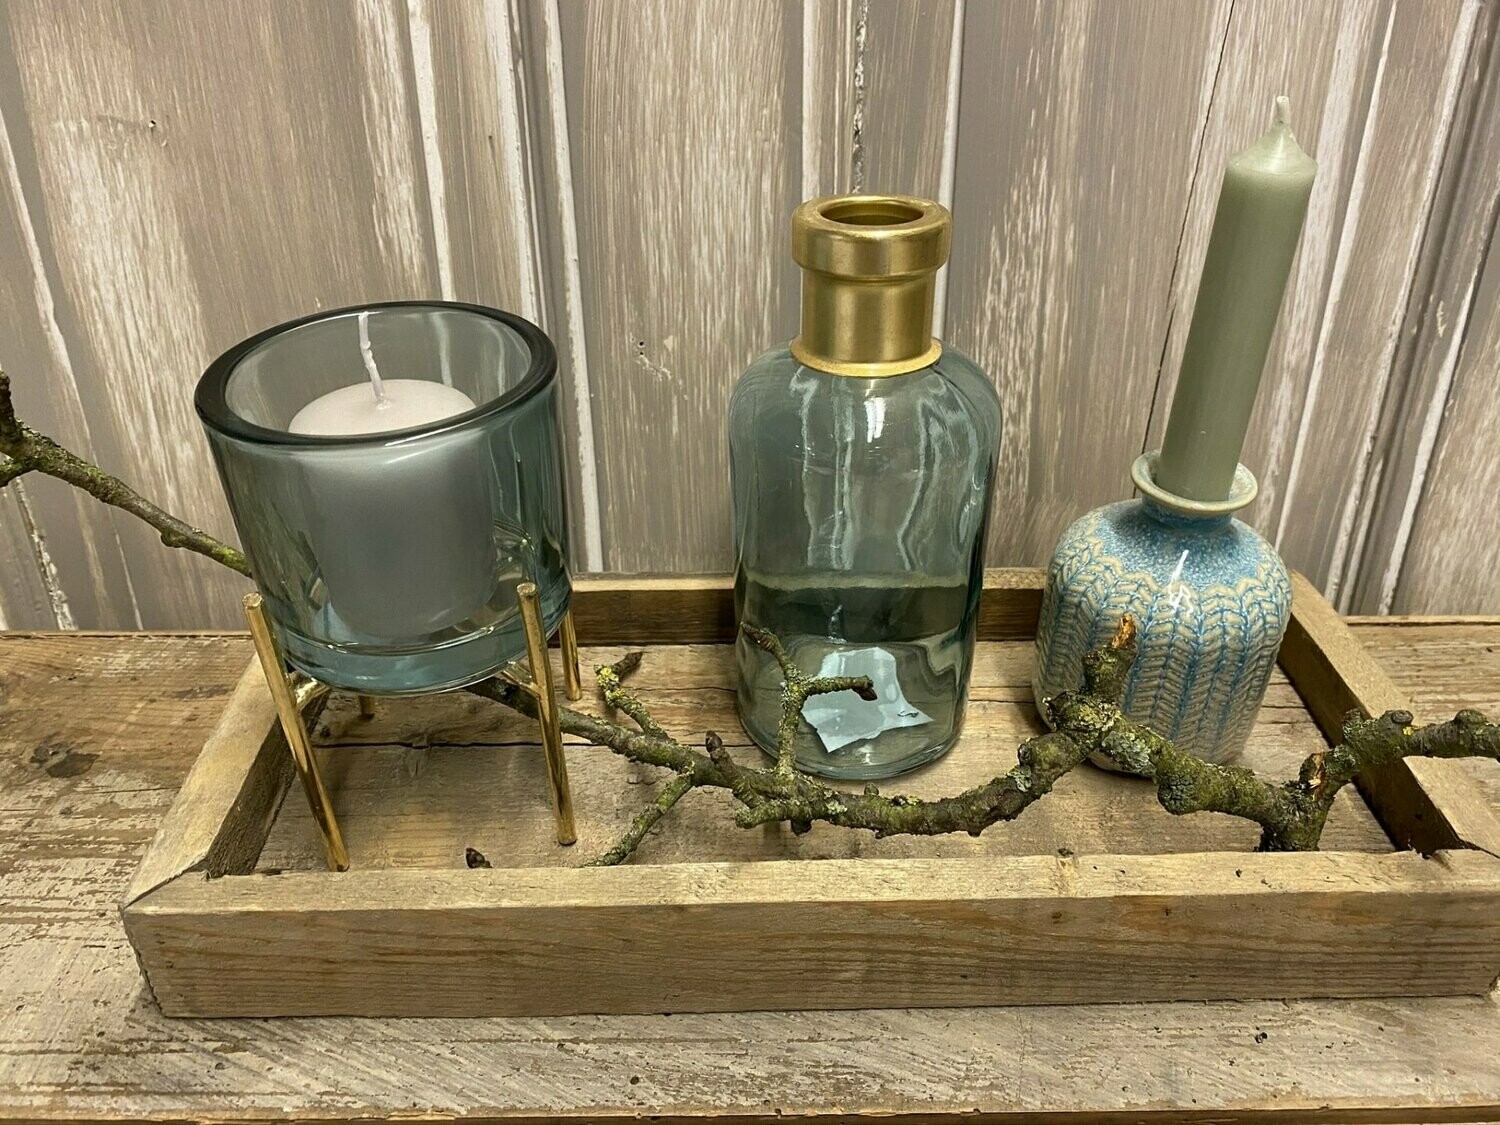 Tablett mit Vasen, Windlicht und Kerze, blau / türkis mit gold